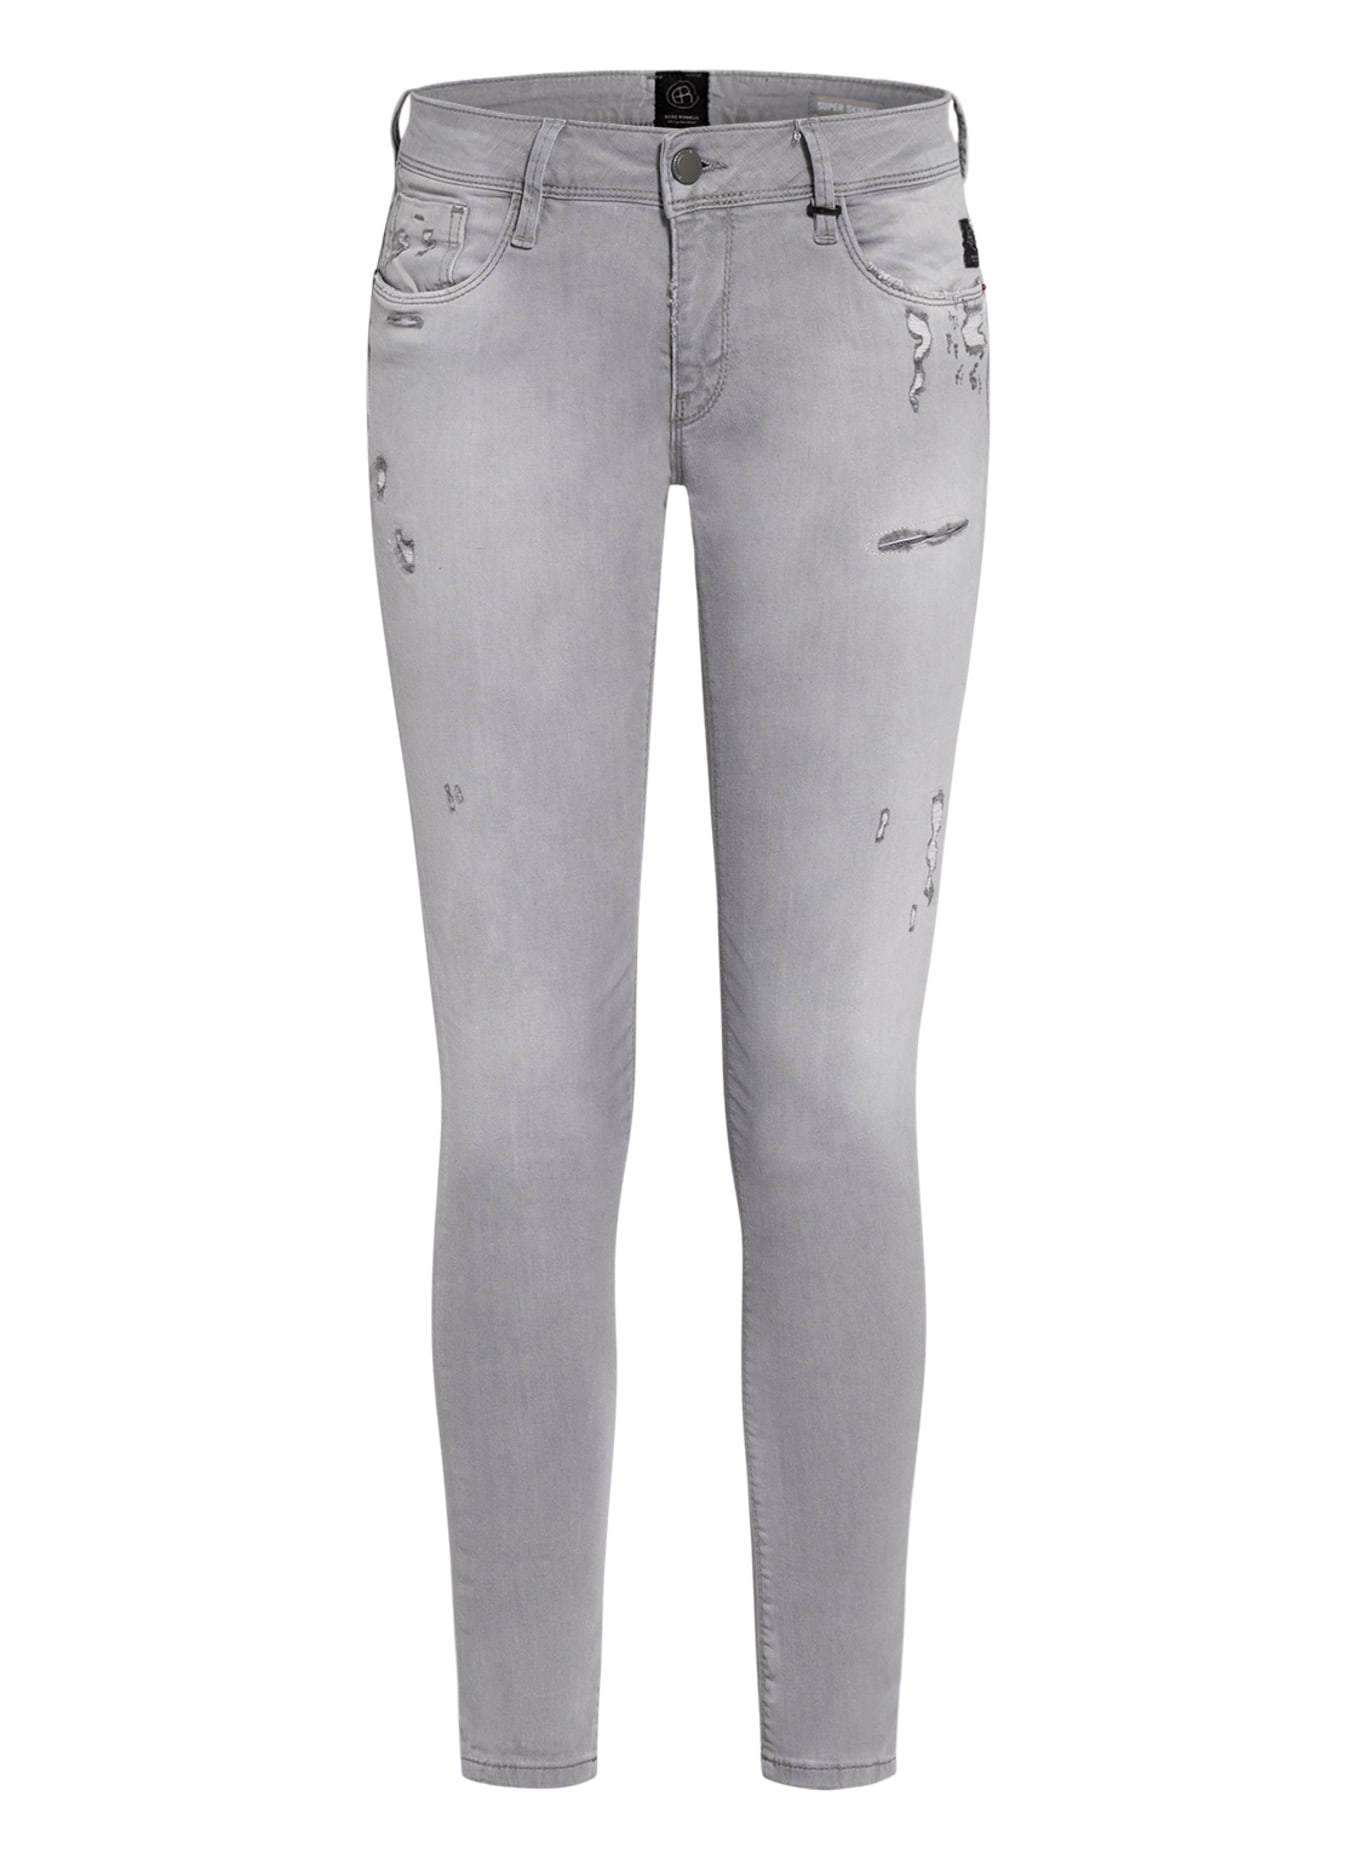 ELIAS RUMELIS Skinny Jeans ERCOURTNEY, Farbe: 559 grey (Bild 1)